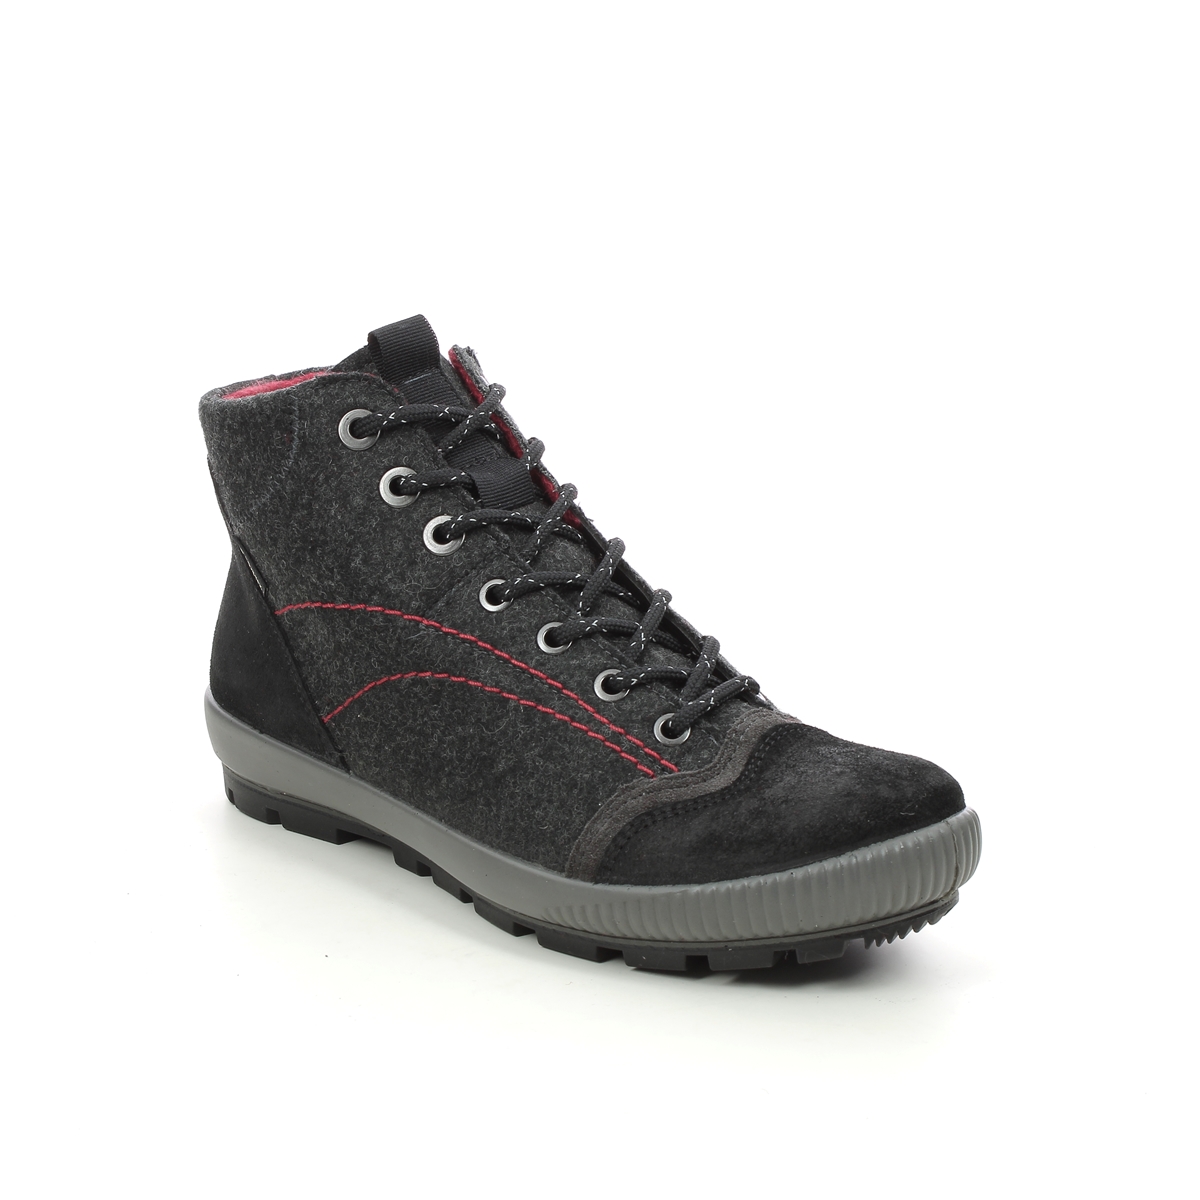 Legero Tanaro Gtx Trek Black Suede Womens Walking Boots 2000123-0000 In Size 6 In Plain Black Suede